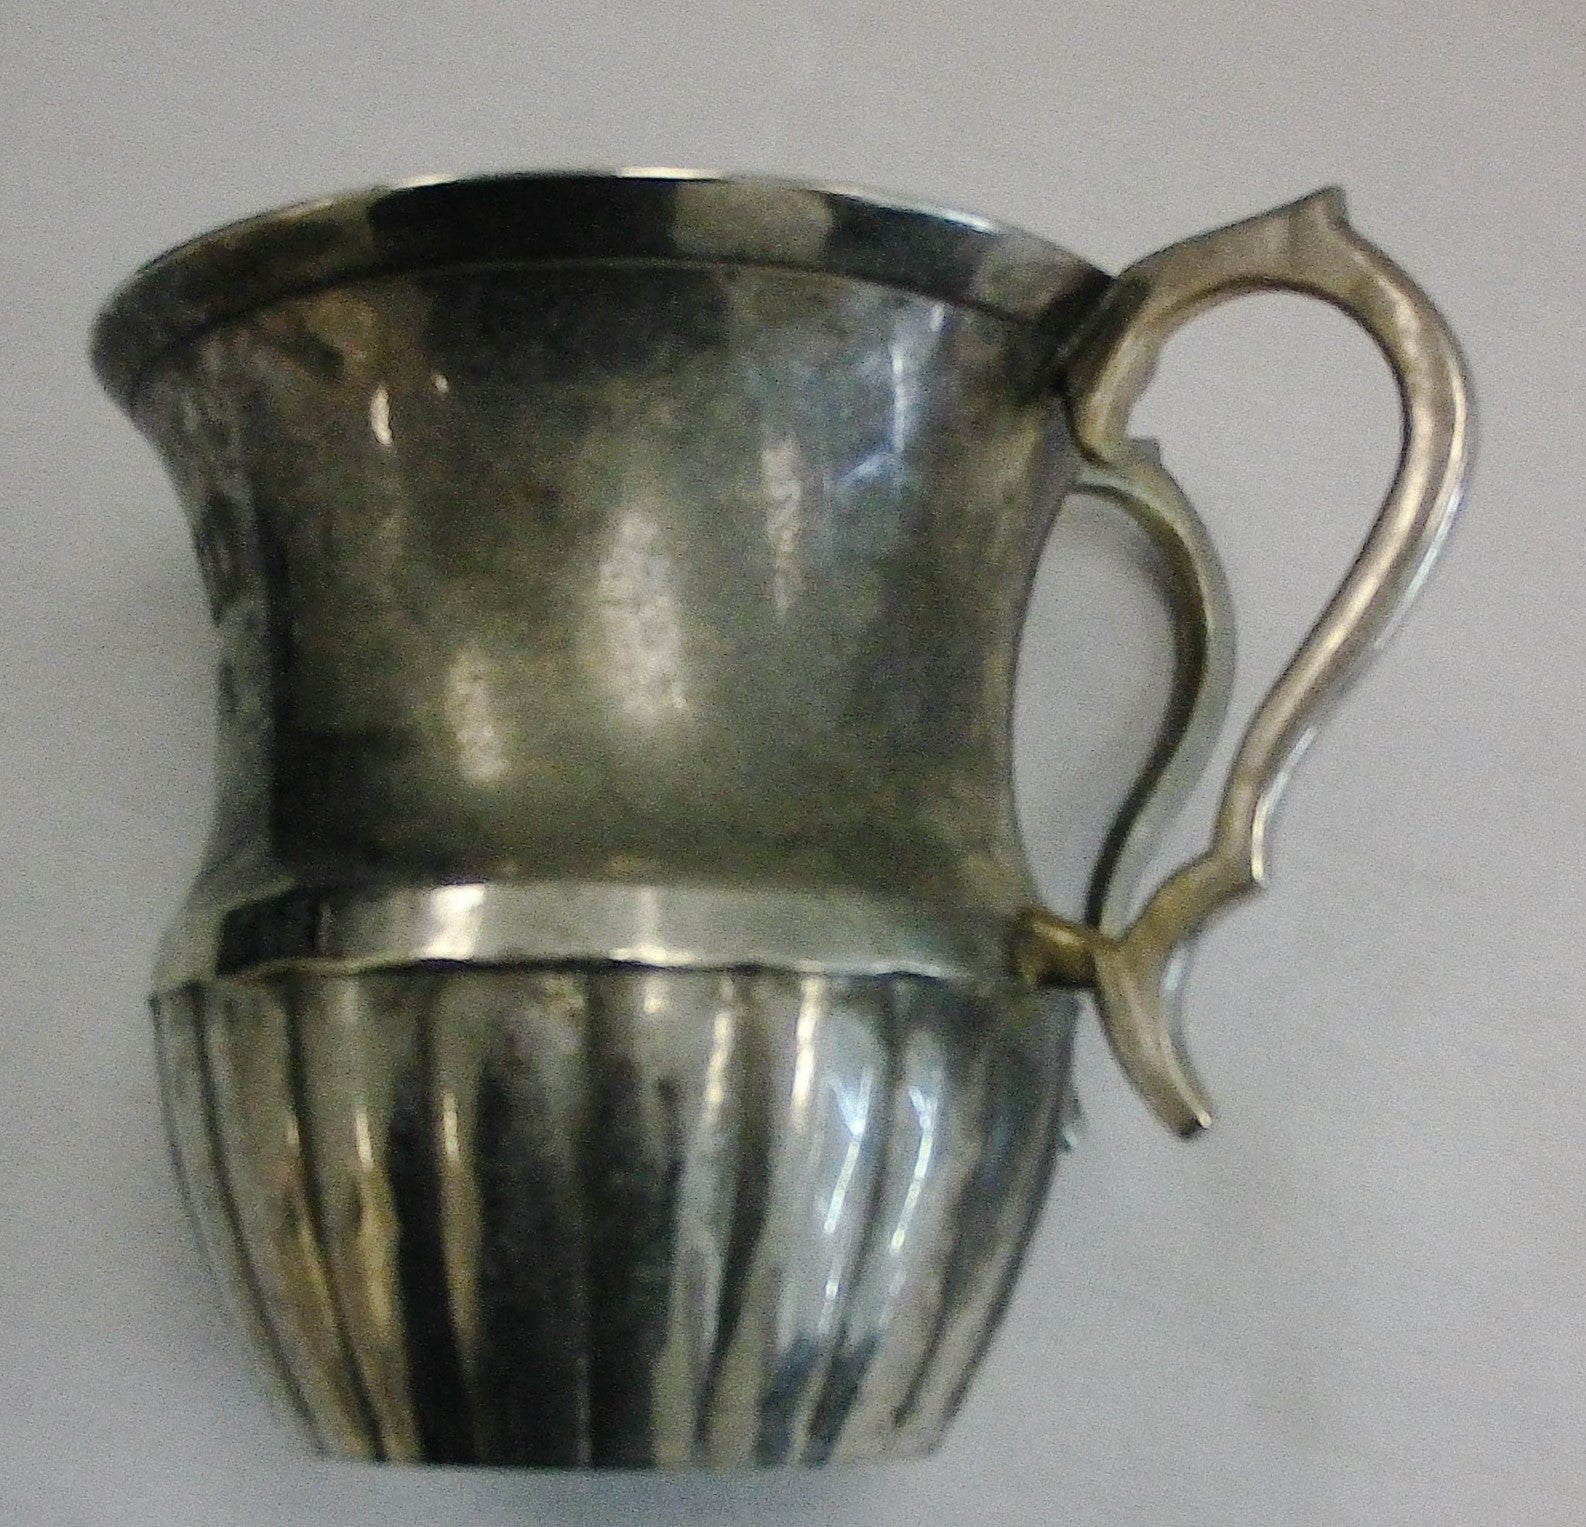 Metal Washing Cup